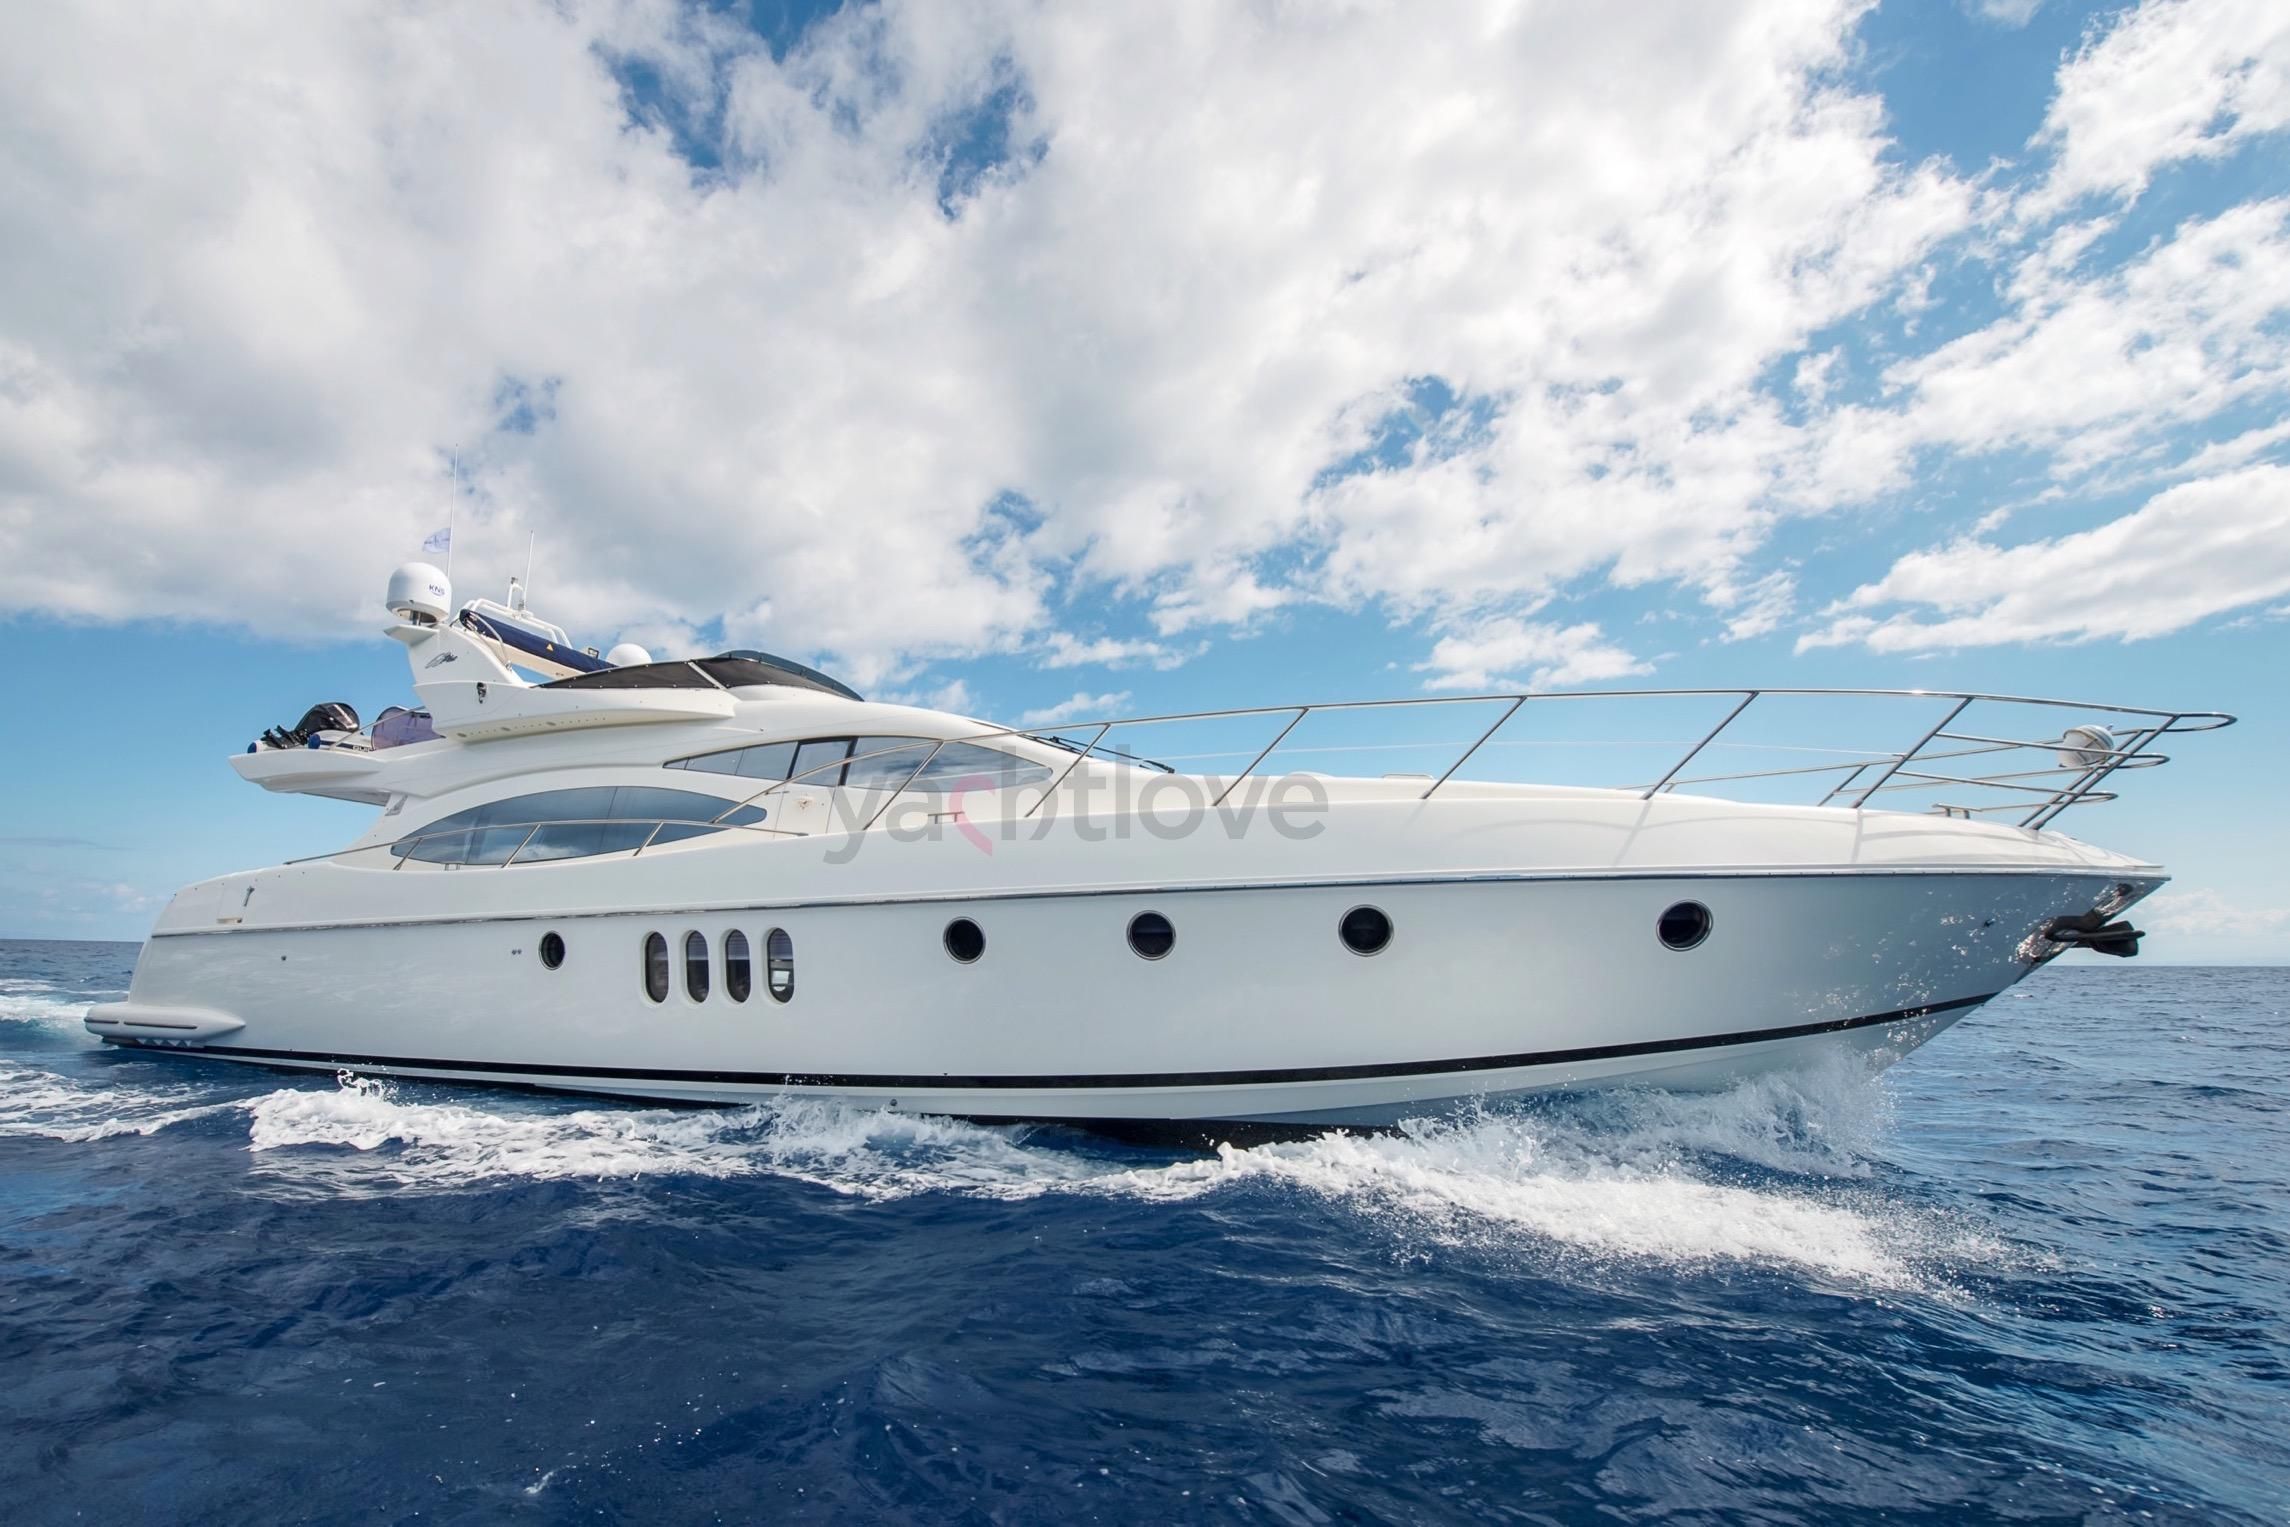 azimut 68 yacht price